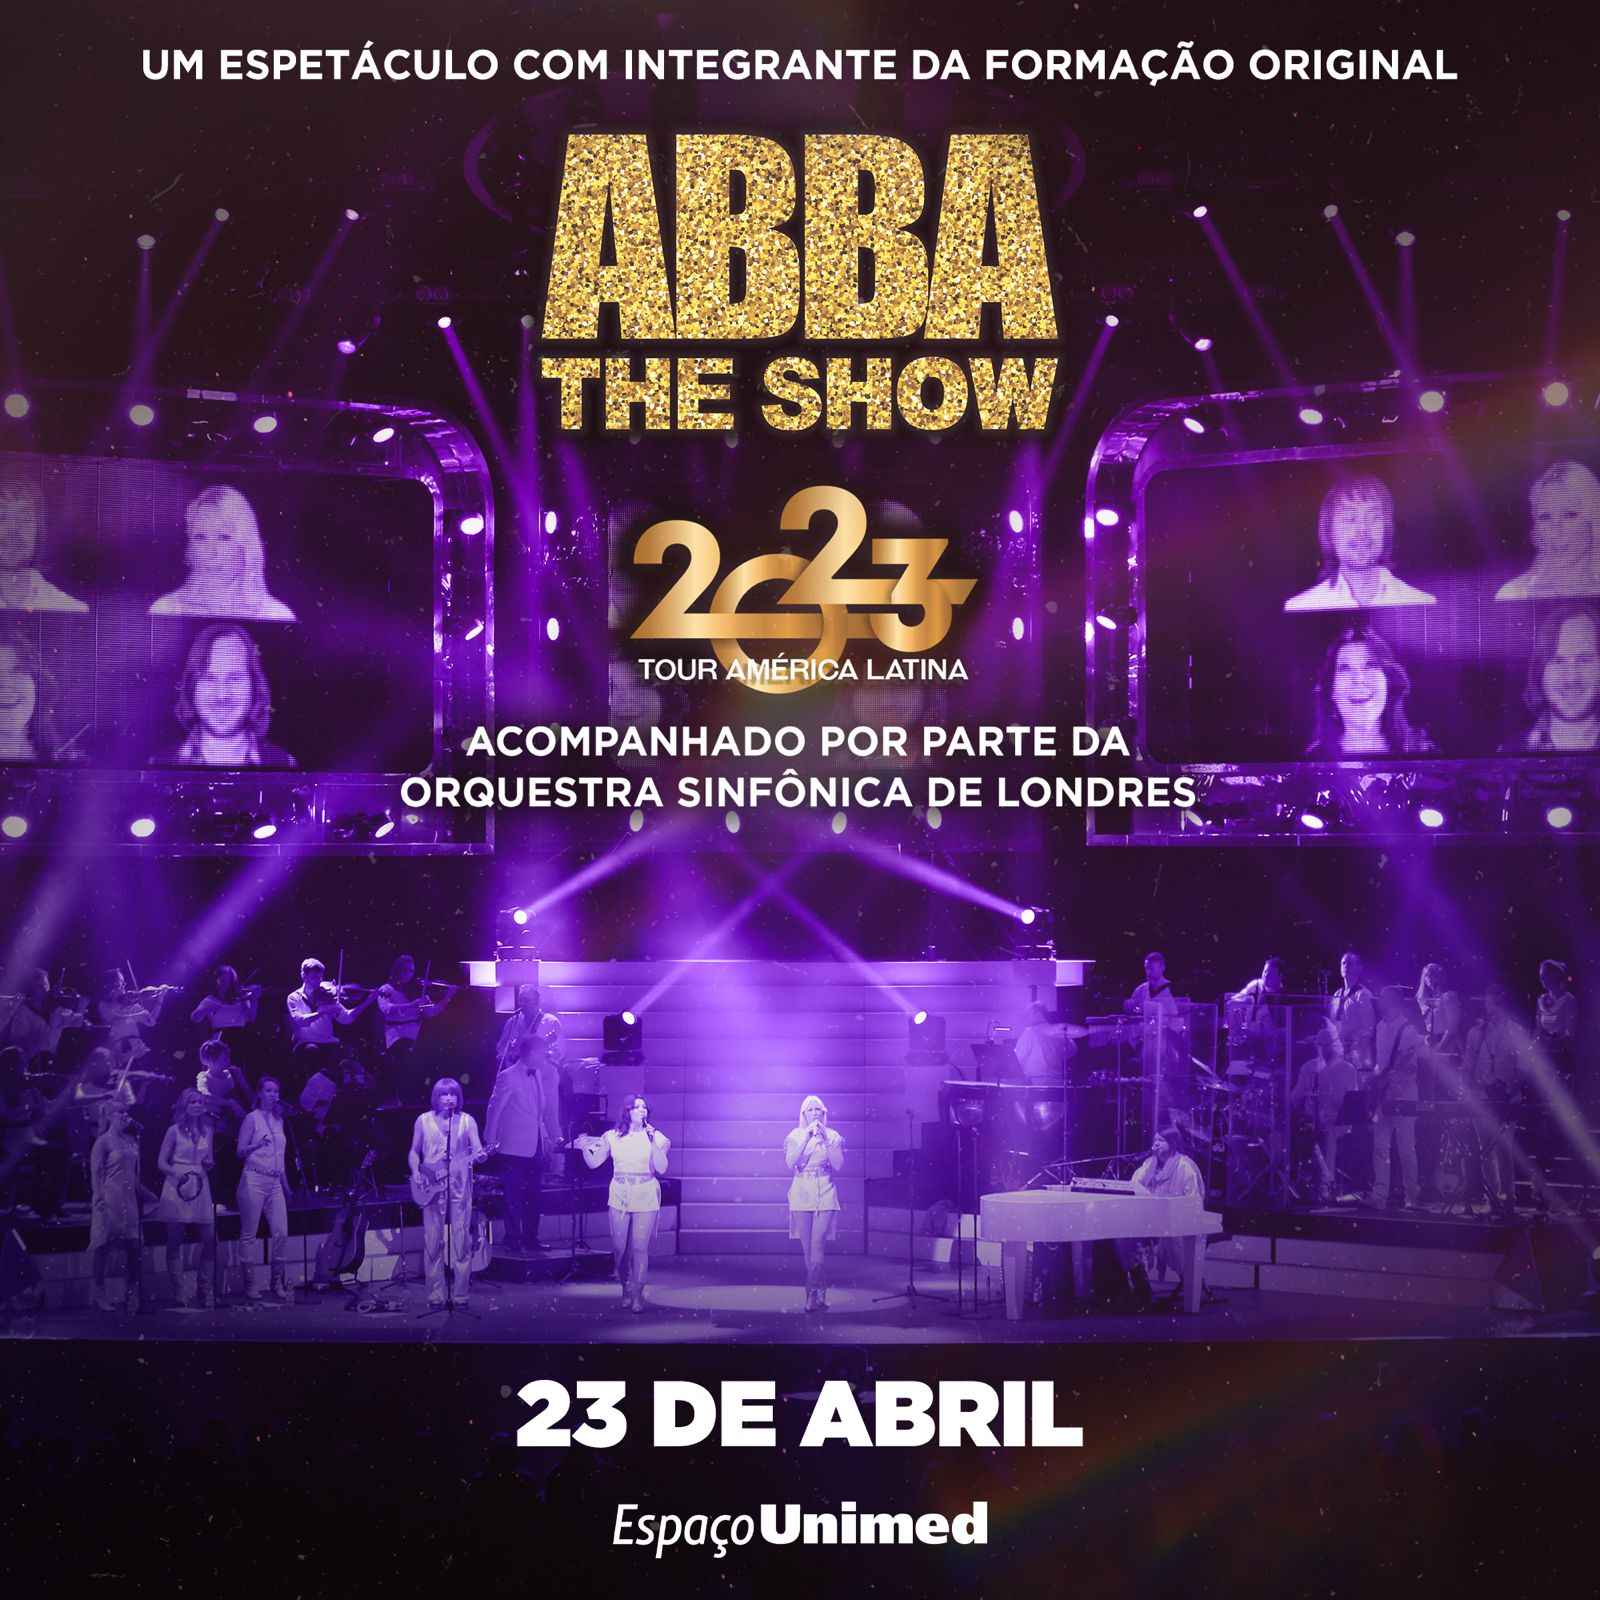 ABBA THE SHOW se apresenta no Espaço Unimed com músicos da Orquestra Sinfônica Nacional de Londres